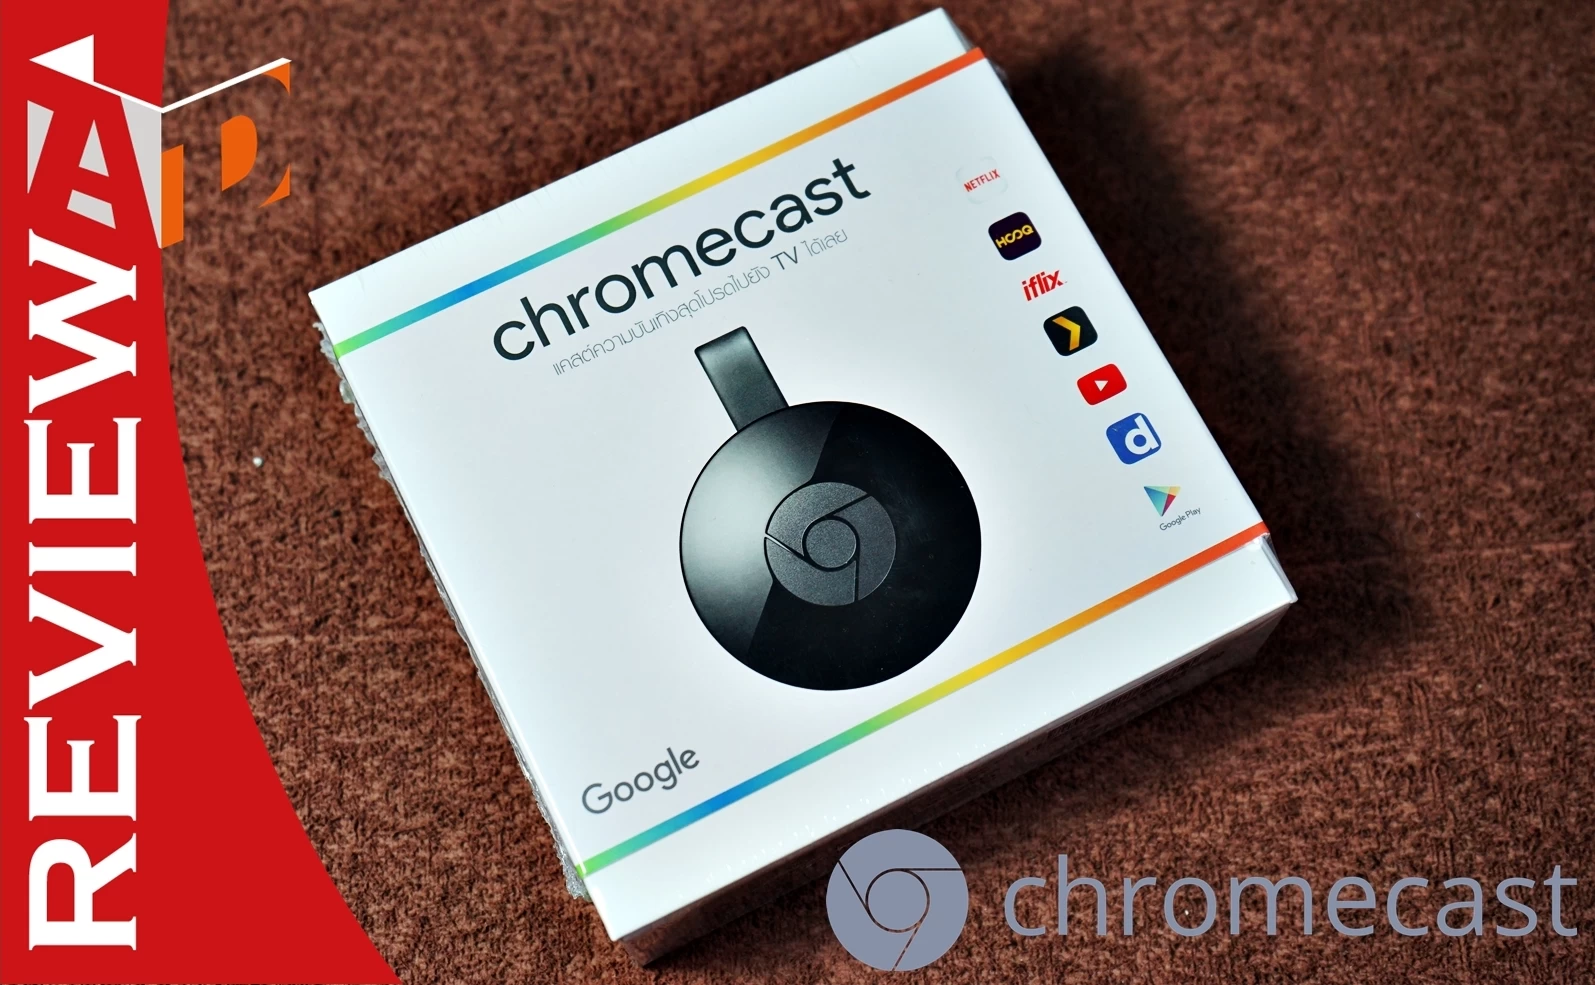 google chromecast | AIS | รีวิว Google Chromecast มารู้จักความสามารถกับวิธีการใช้งานของมันกันดีกว่า (พร้อมวิธีเซ็ตค่าเบื้องต้น)